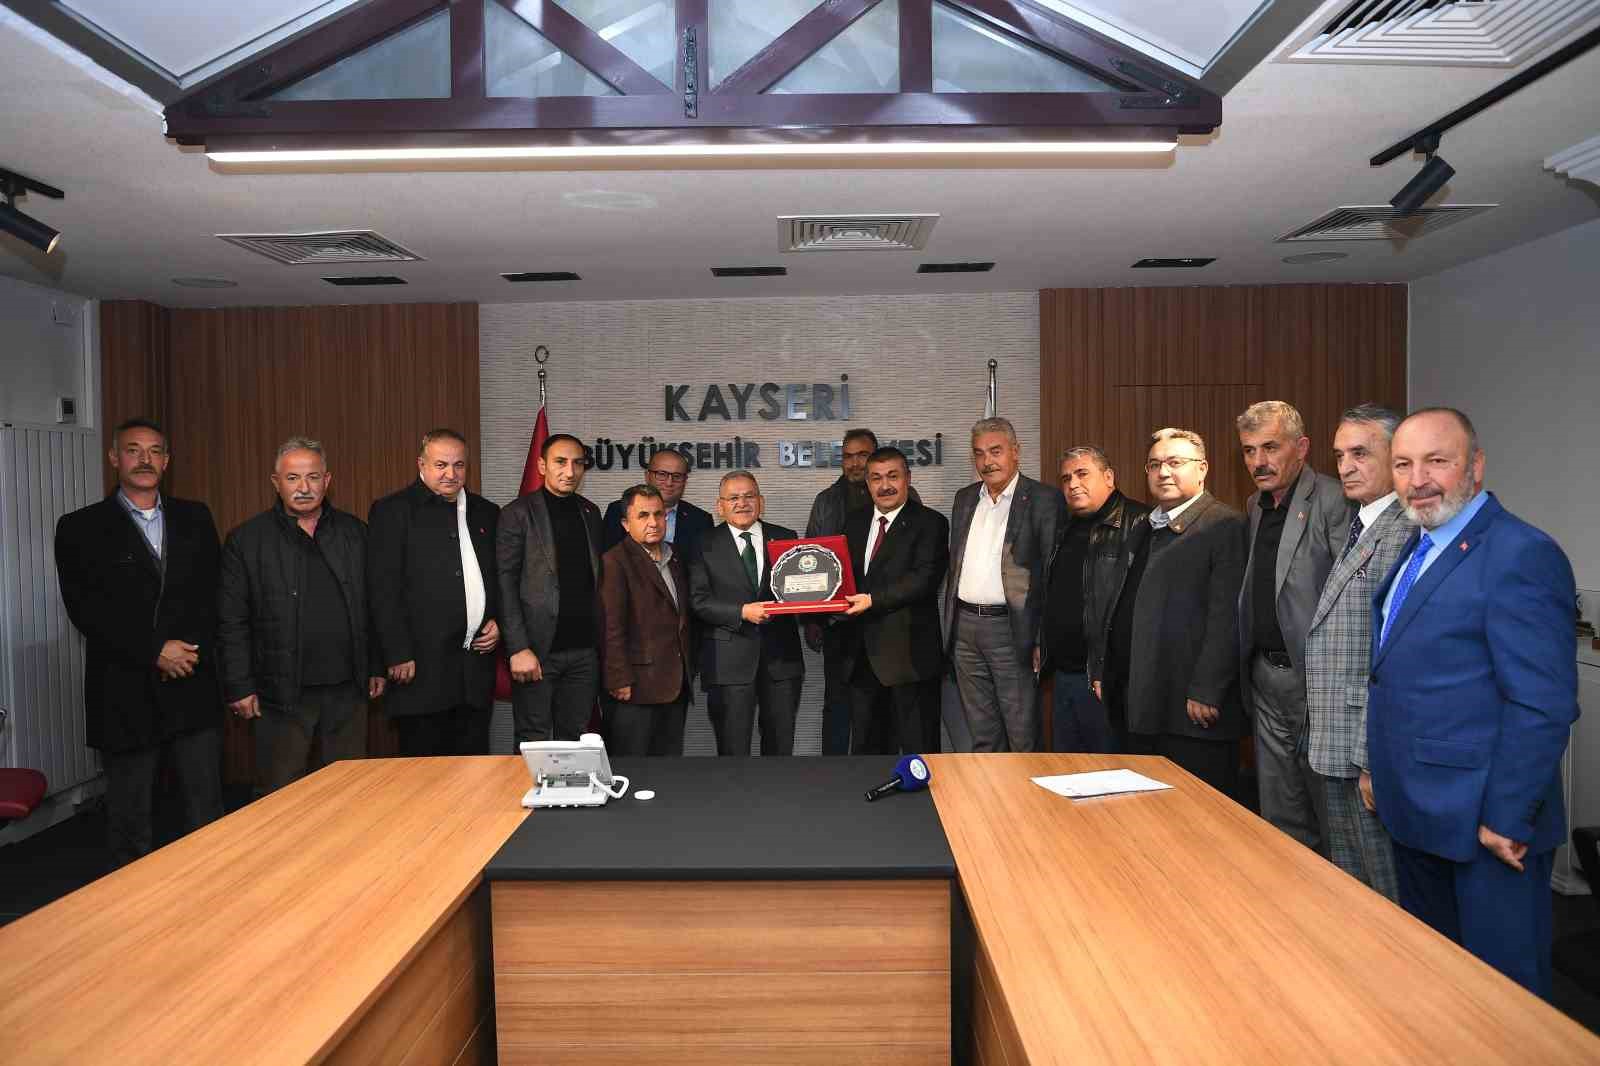 Kayseri Büyükşehir’in kırsala desteği sürüyor
